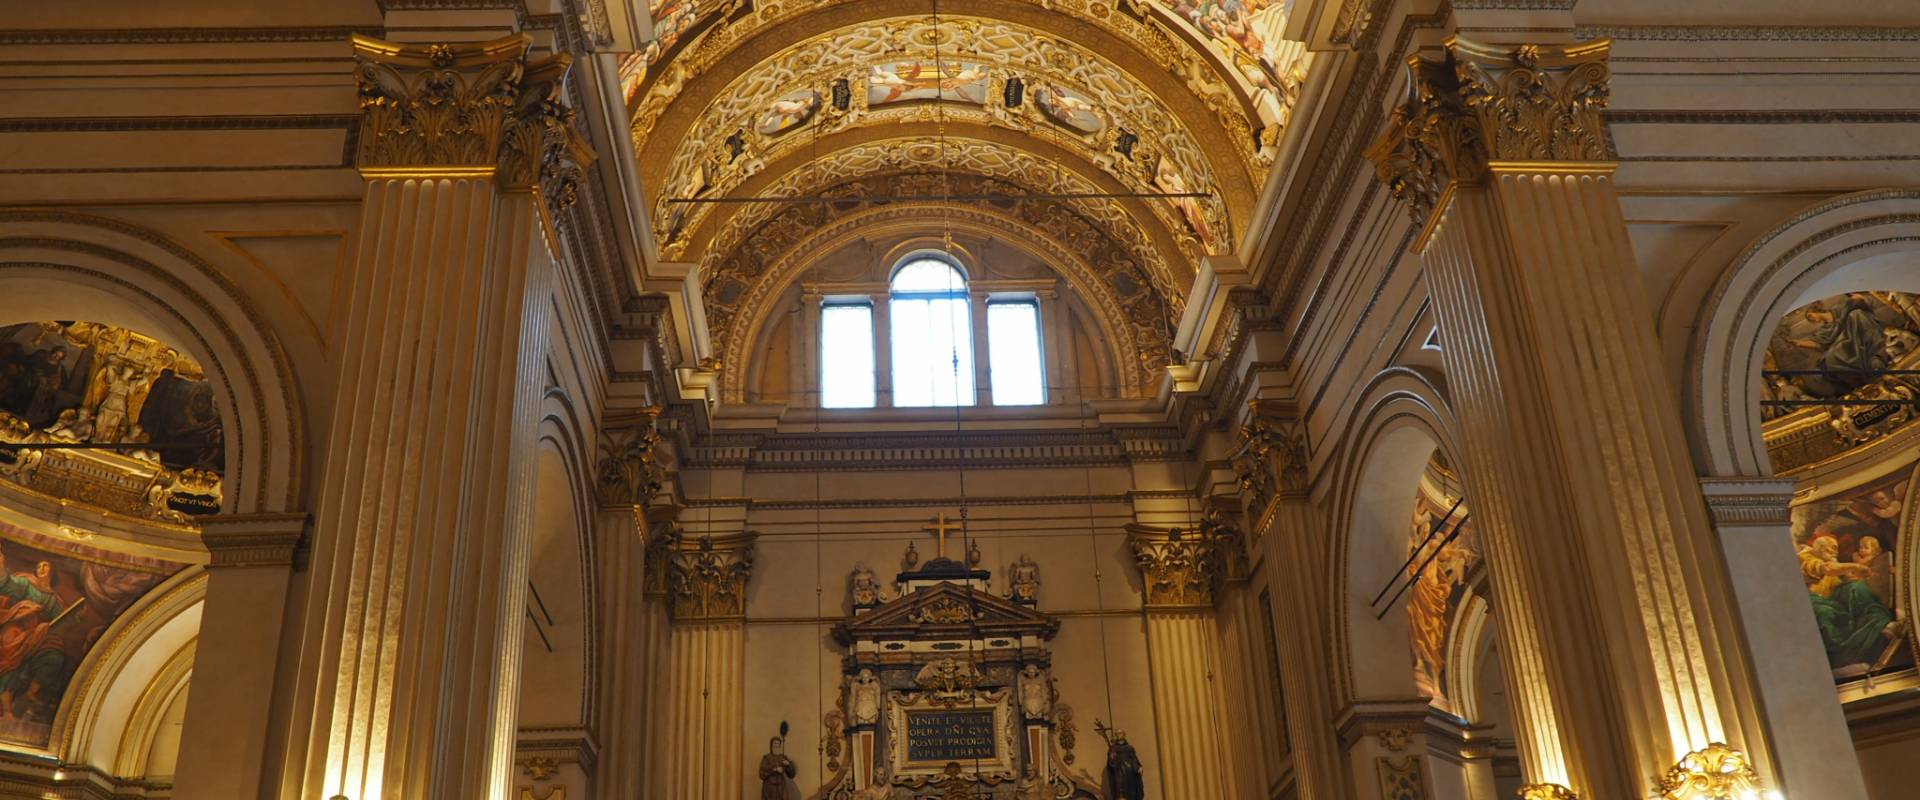 Tempio Beata Vergine della Ghiara - Reggio E foto di Bonnac